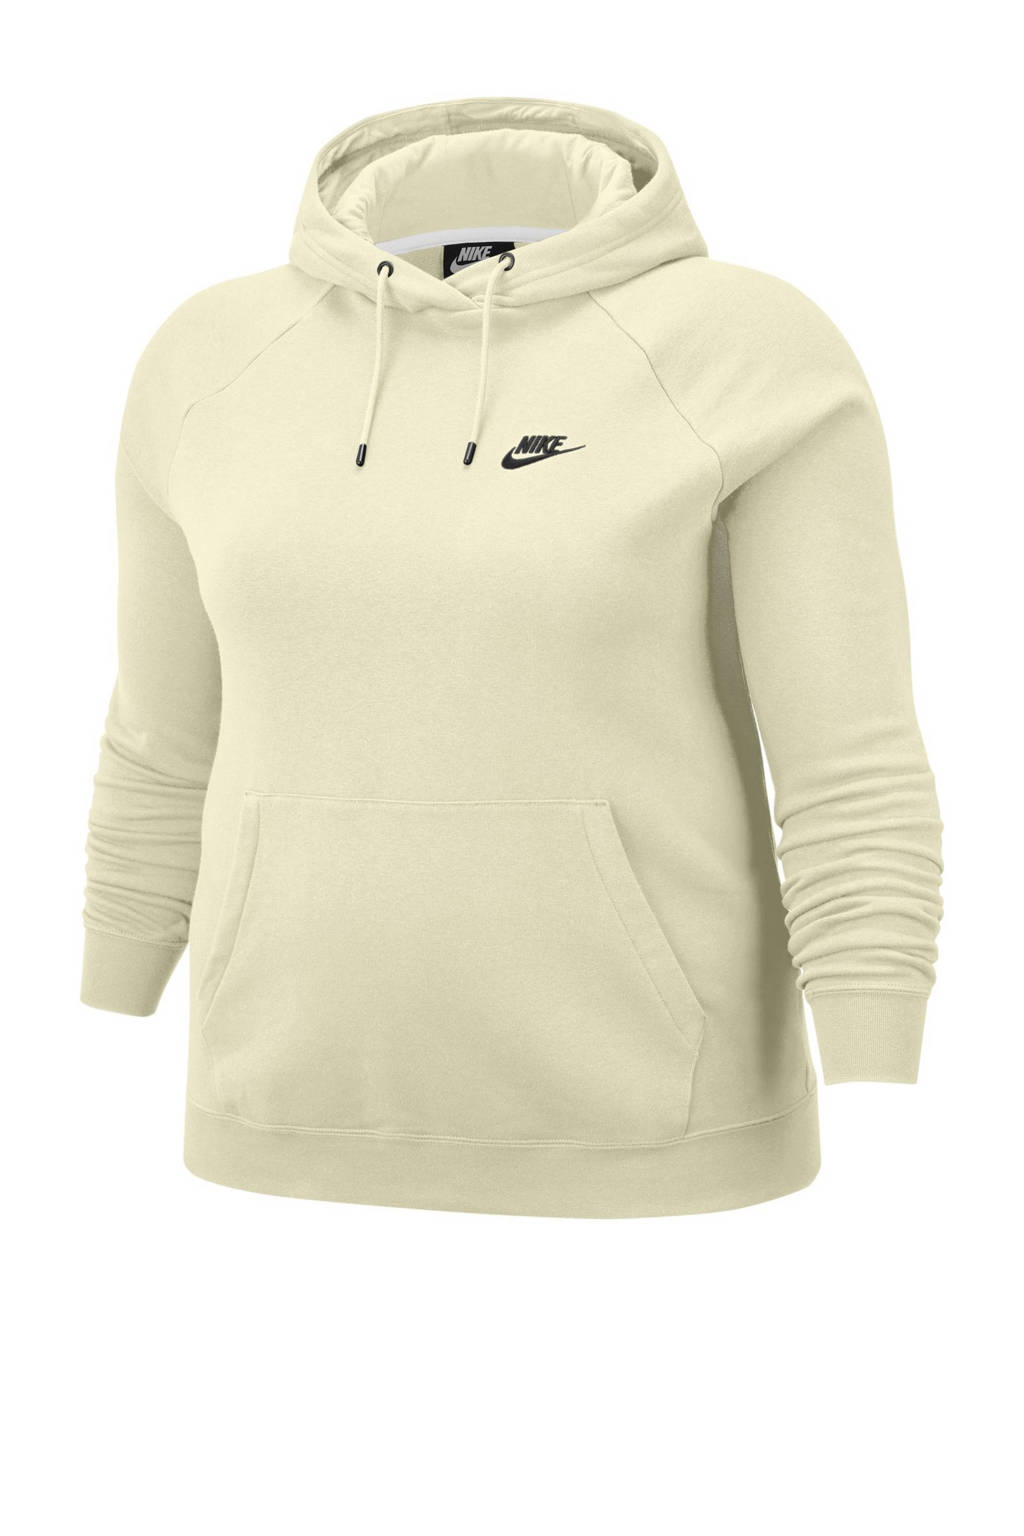 Beige dames Nike Plus Size hoodie van katoen met logo dessin, lange mouwen, capuchon en geribde boorden